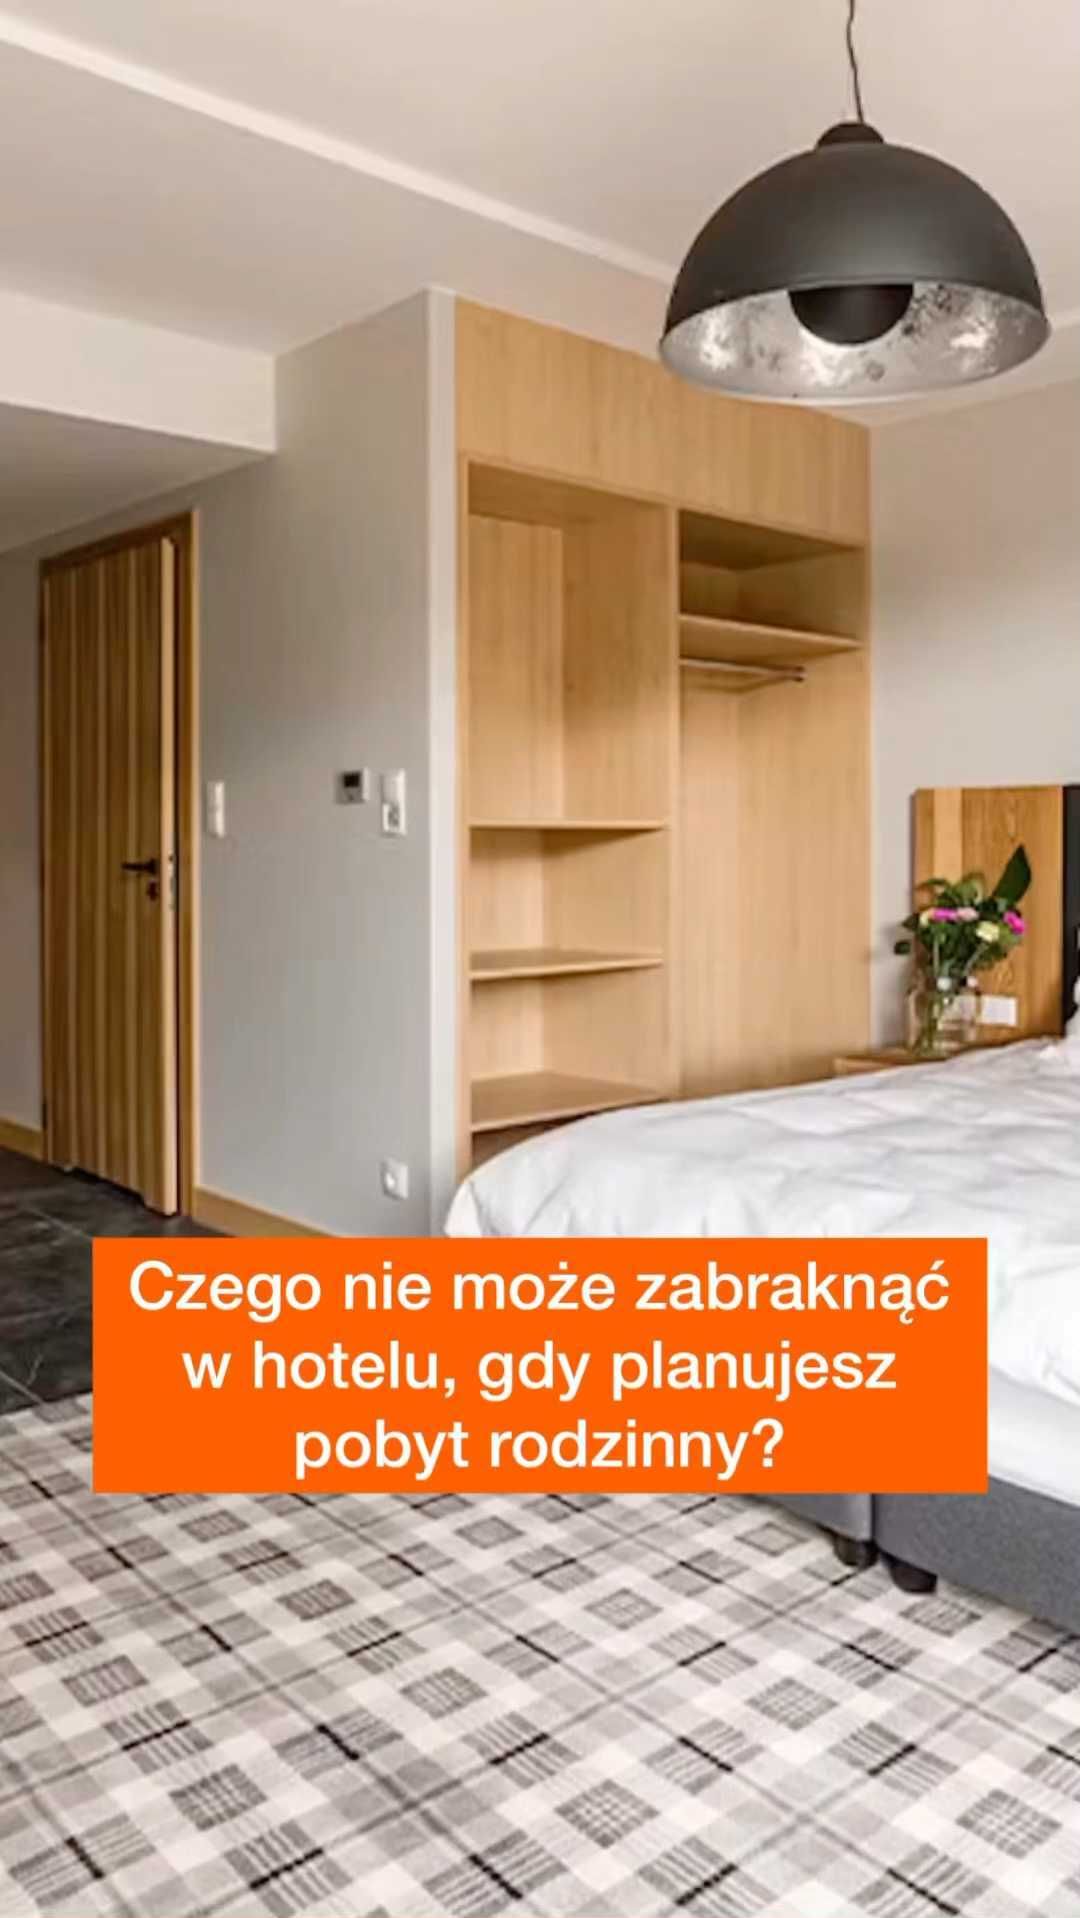 Jakie są Twoje odczucia? Jesteś z teamu hoteli #petFriendly czy #bezZwierząt?  Na Travelist.pl znajdziesz oba rodzaje obiektów, jak zwykle z gwarancją najlepszej ceny. Sprawdź BIO ➡️ @Travelist.pl i nasze propozycje.  #hotel #hotelrodzinny #petfriendlyhotel #petfriendly #kochampsy #gdzienaurlop #cisza #spokój #relaks #instacat #instadog